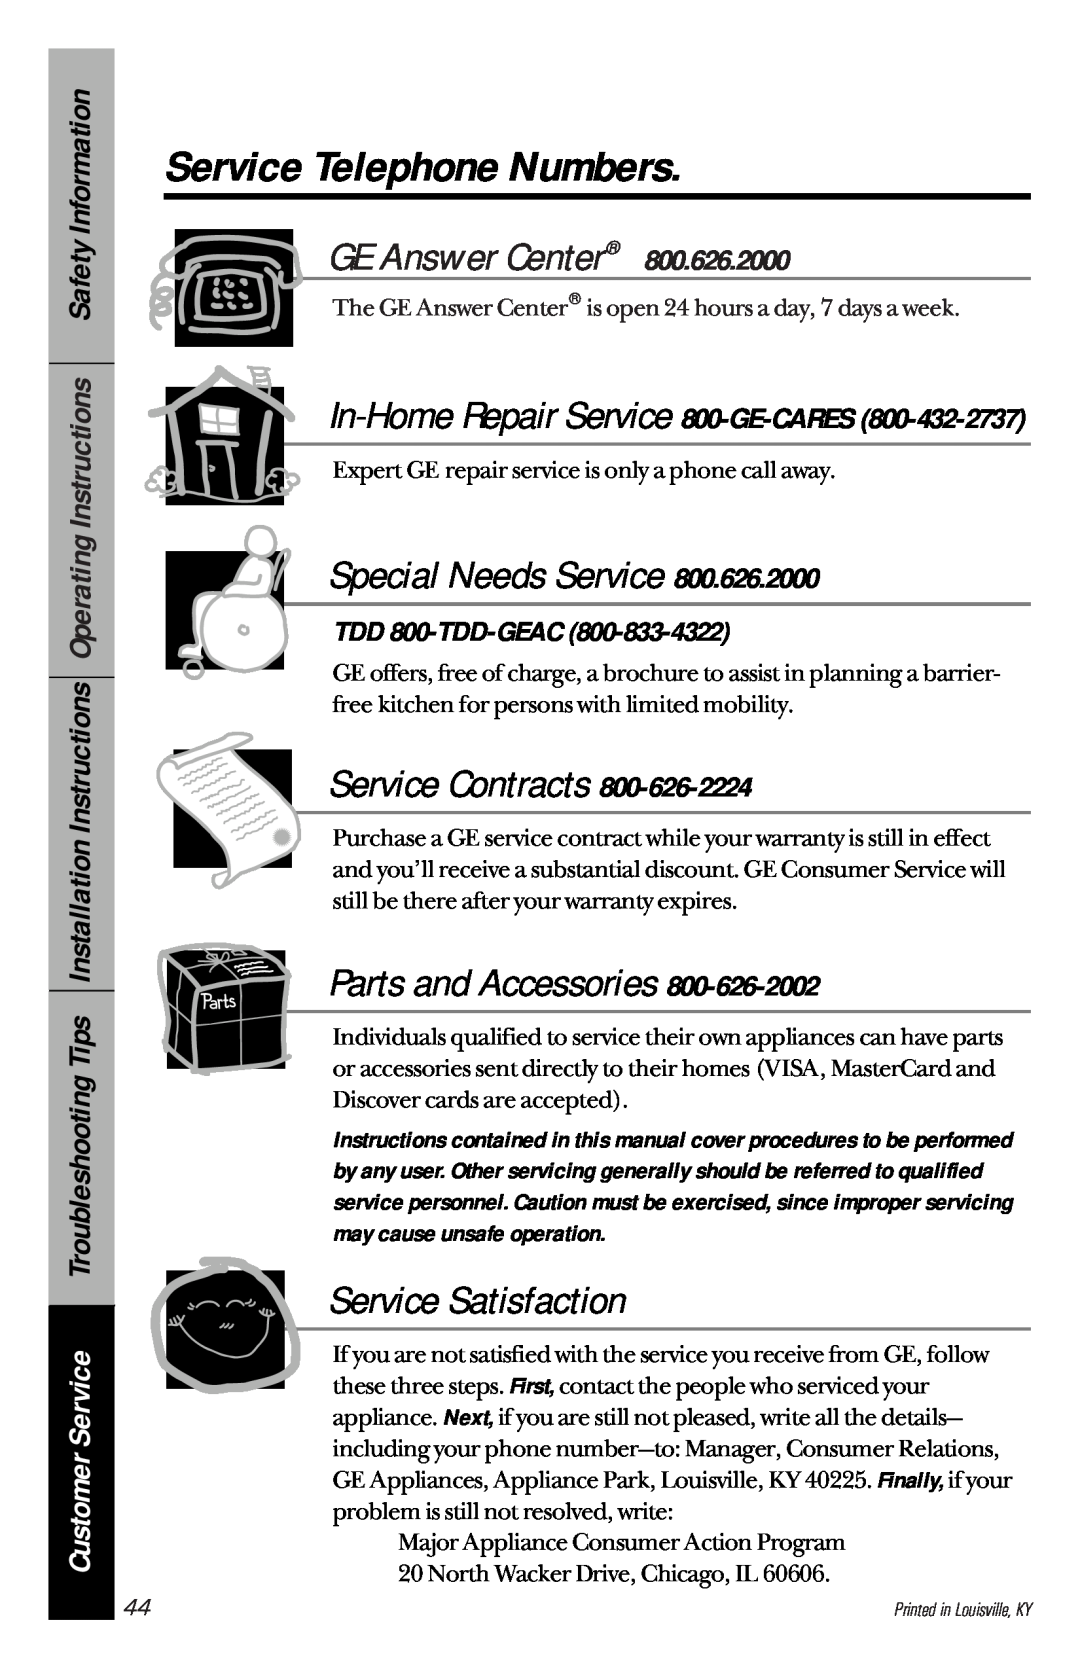 GE JBP22, JBP30, JBP26 Service Telephone Numbers, In-Home Repair Service 800-GE-CARES, TDD 800-TDD-GEAC, GE Answer Center 